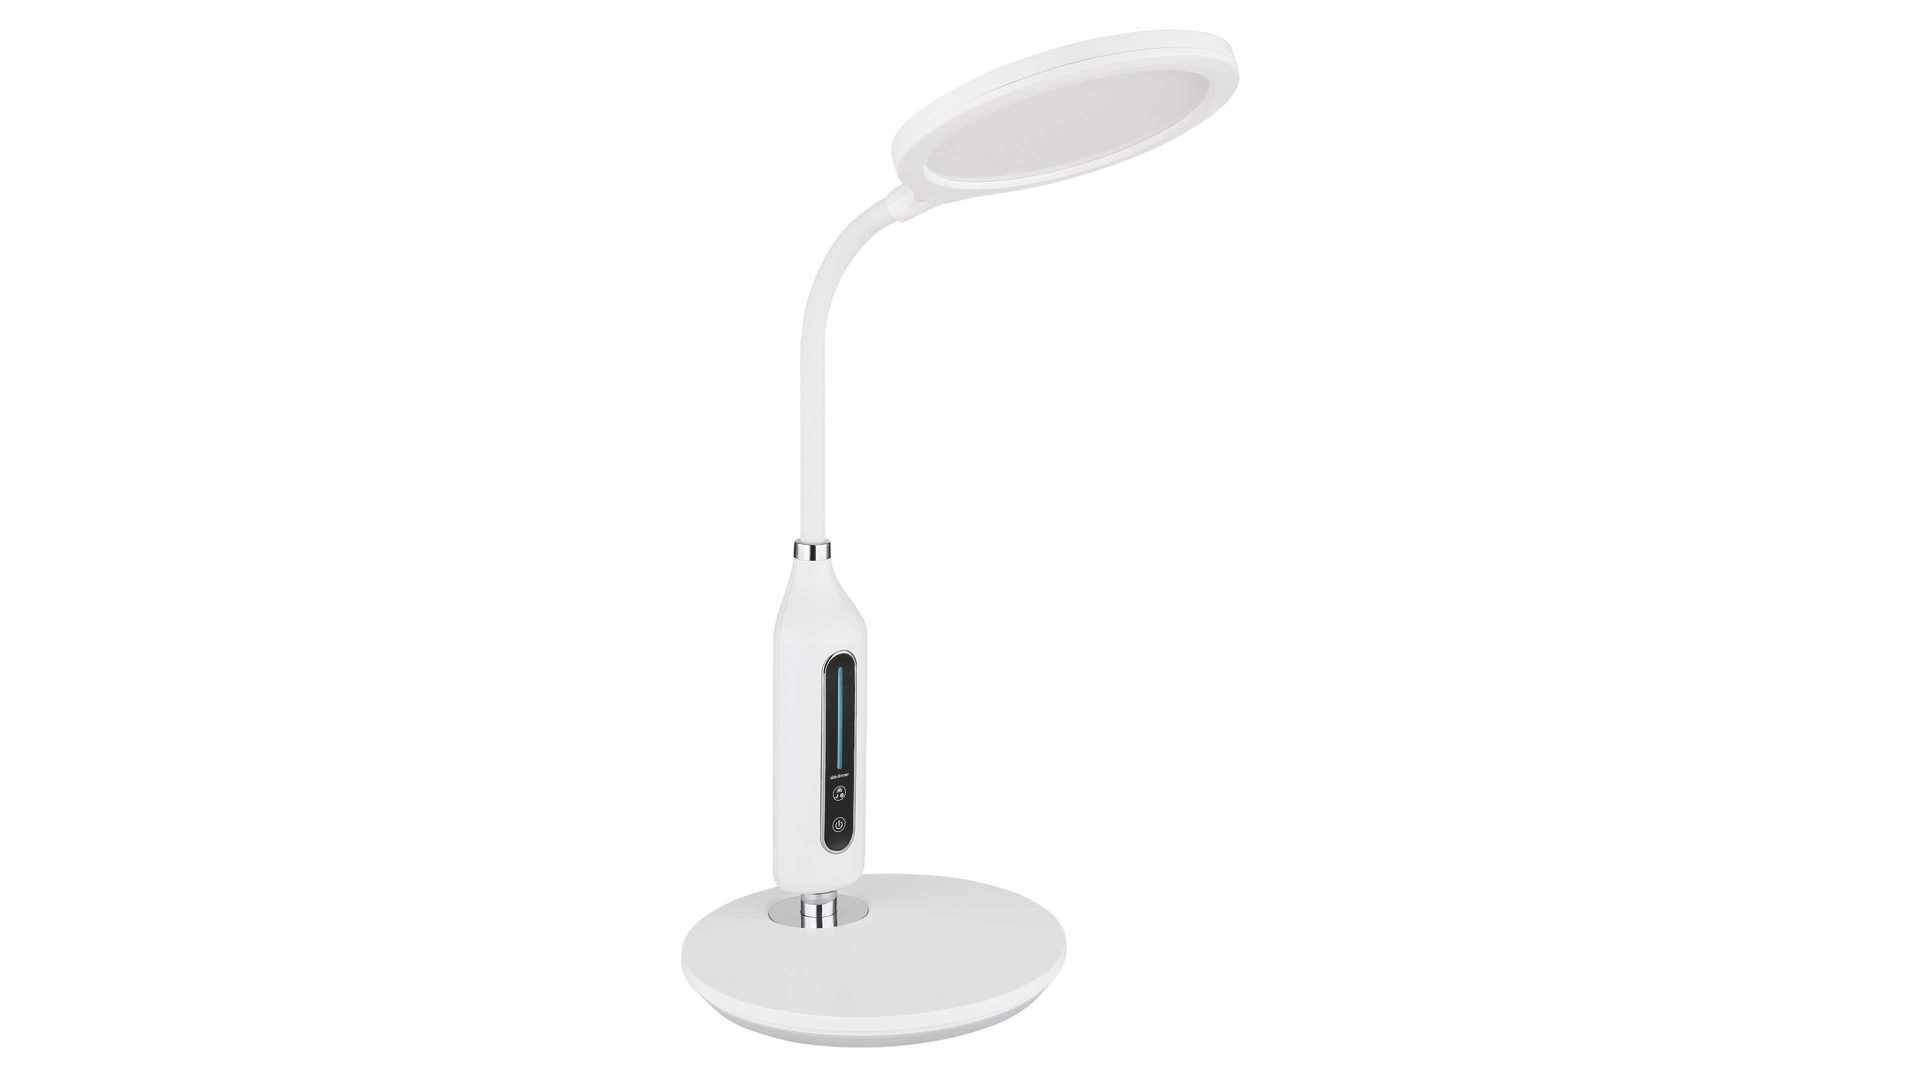 Schreibtischleuchte Globo lighting aus Kunststoff in Weiß GLOBO Lampen Serie Fruggy - Schreibtischleuchte weißes Silikon - Höhe ca. 41 cm